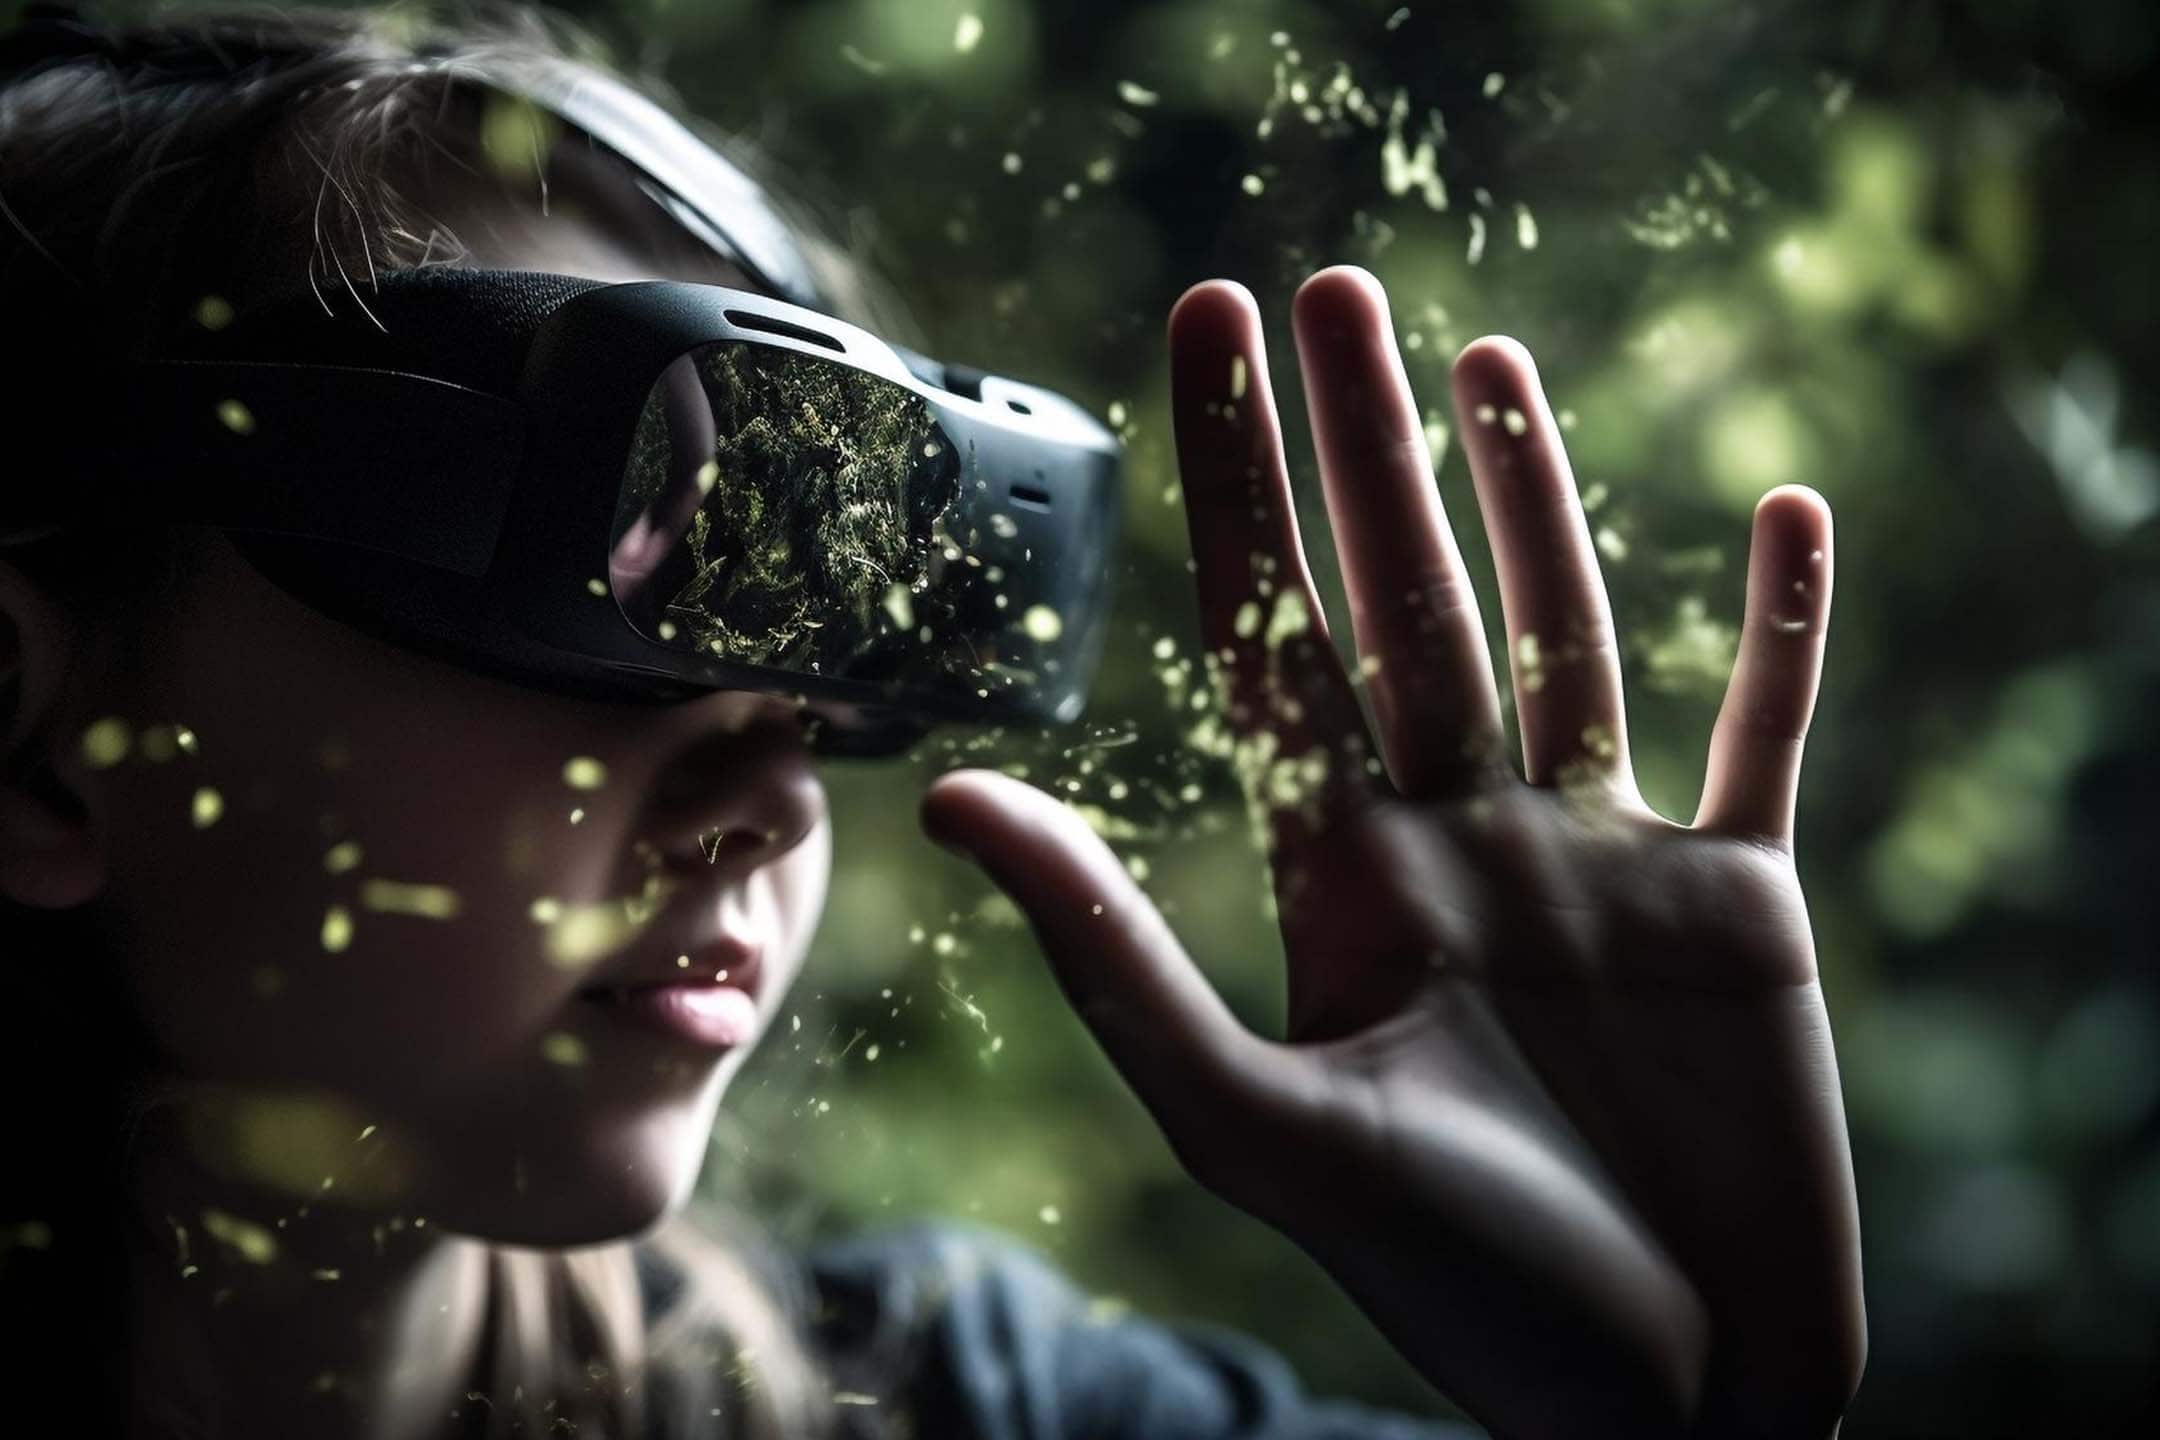 Jeune personne évoluant dans un environnement forestier en réalité virtuelle, tendant la main pour toucher les particules illuminées.